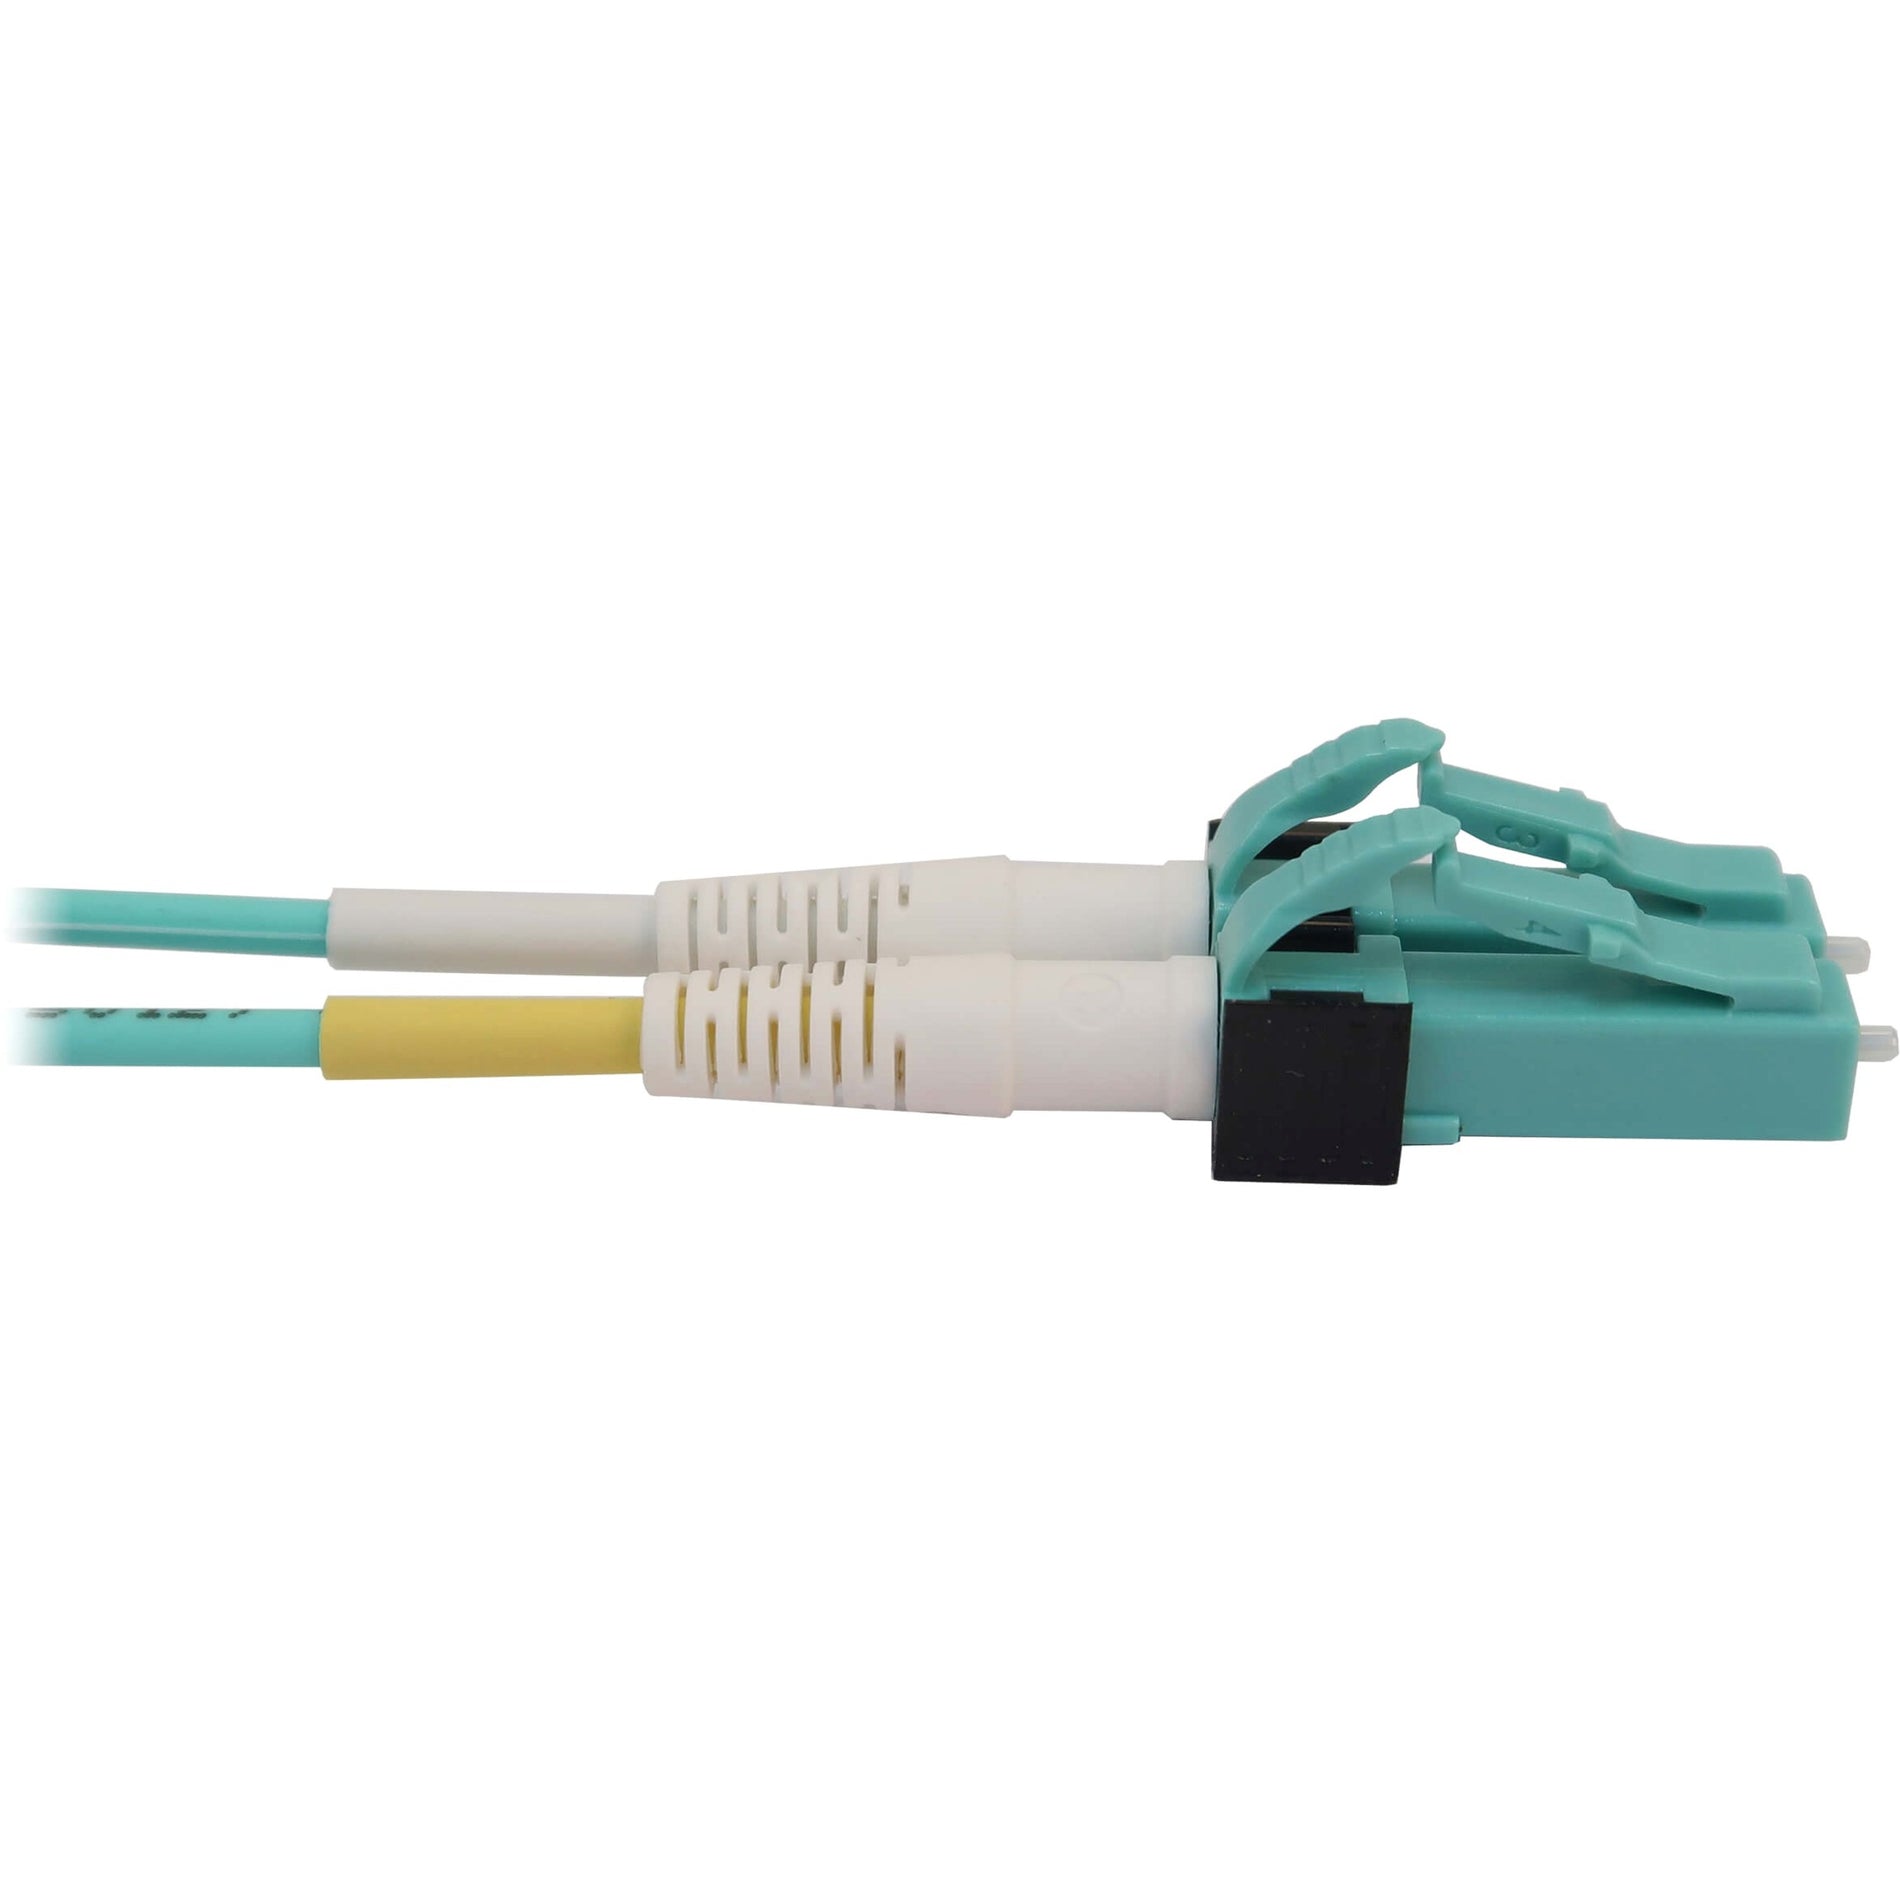 Tripp Lite N845X-03M-8L-MG Fiber Optic Duplex Trunk Network Cable, 9.84 ft, 100 Gbit/s, Magenta